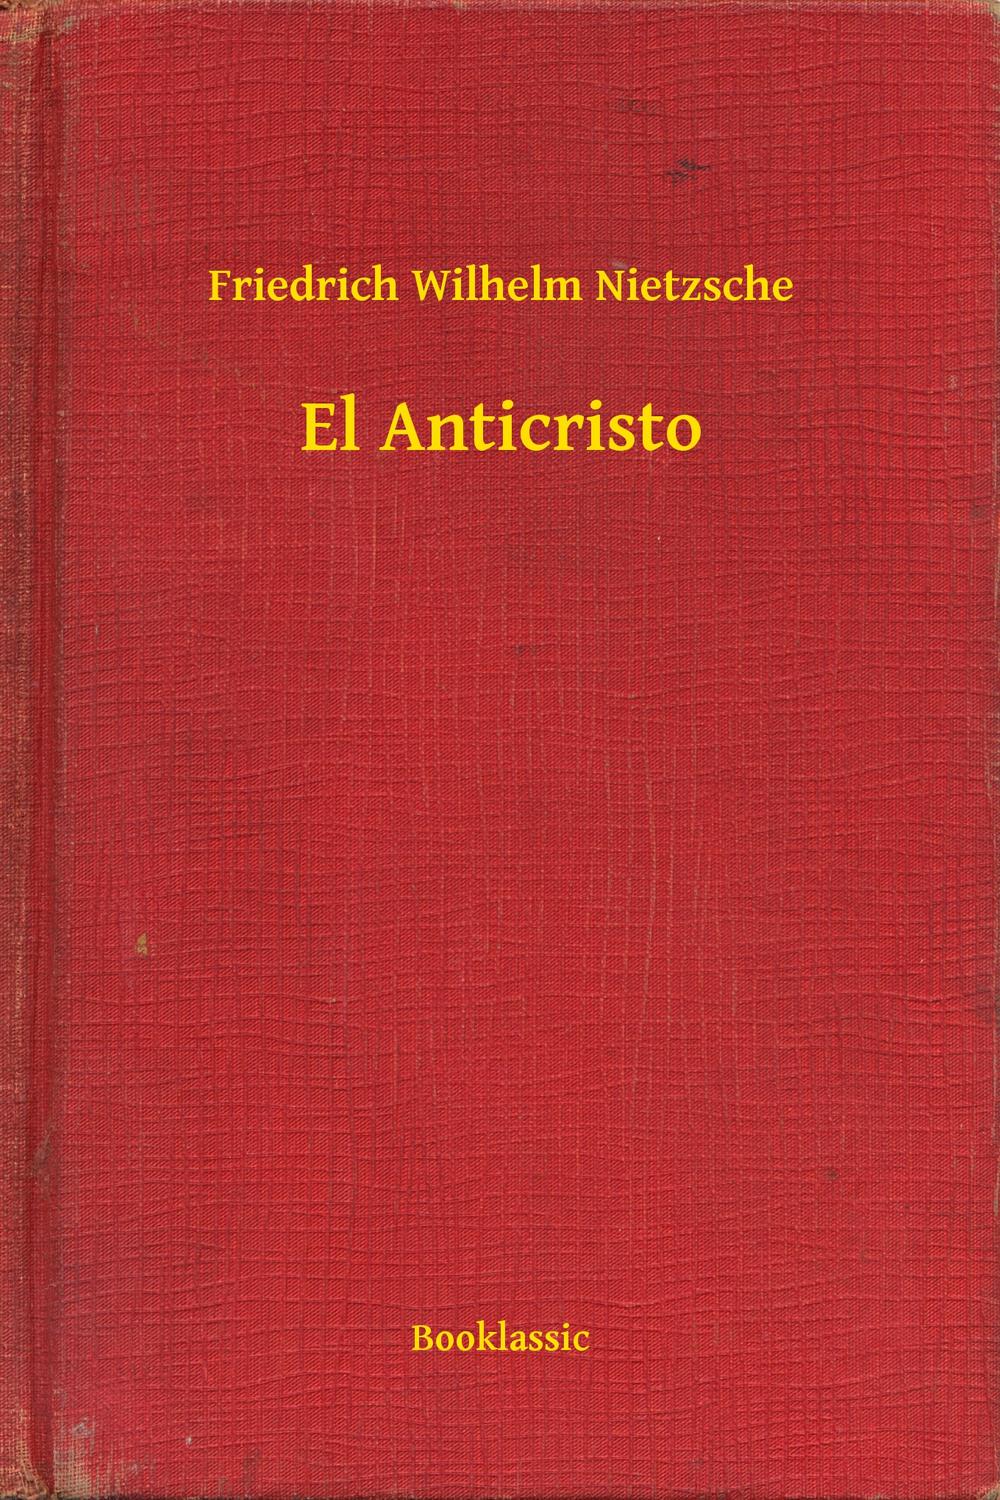 El Anticristo - Friedrich Wilhelm Nietzsche,,